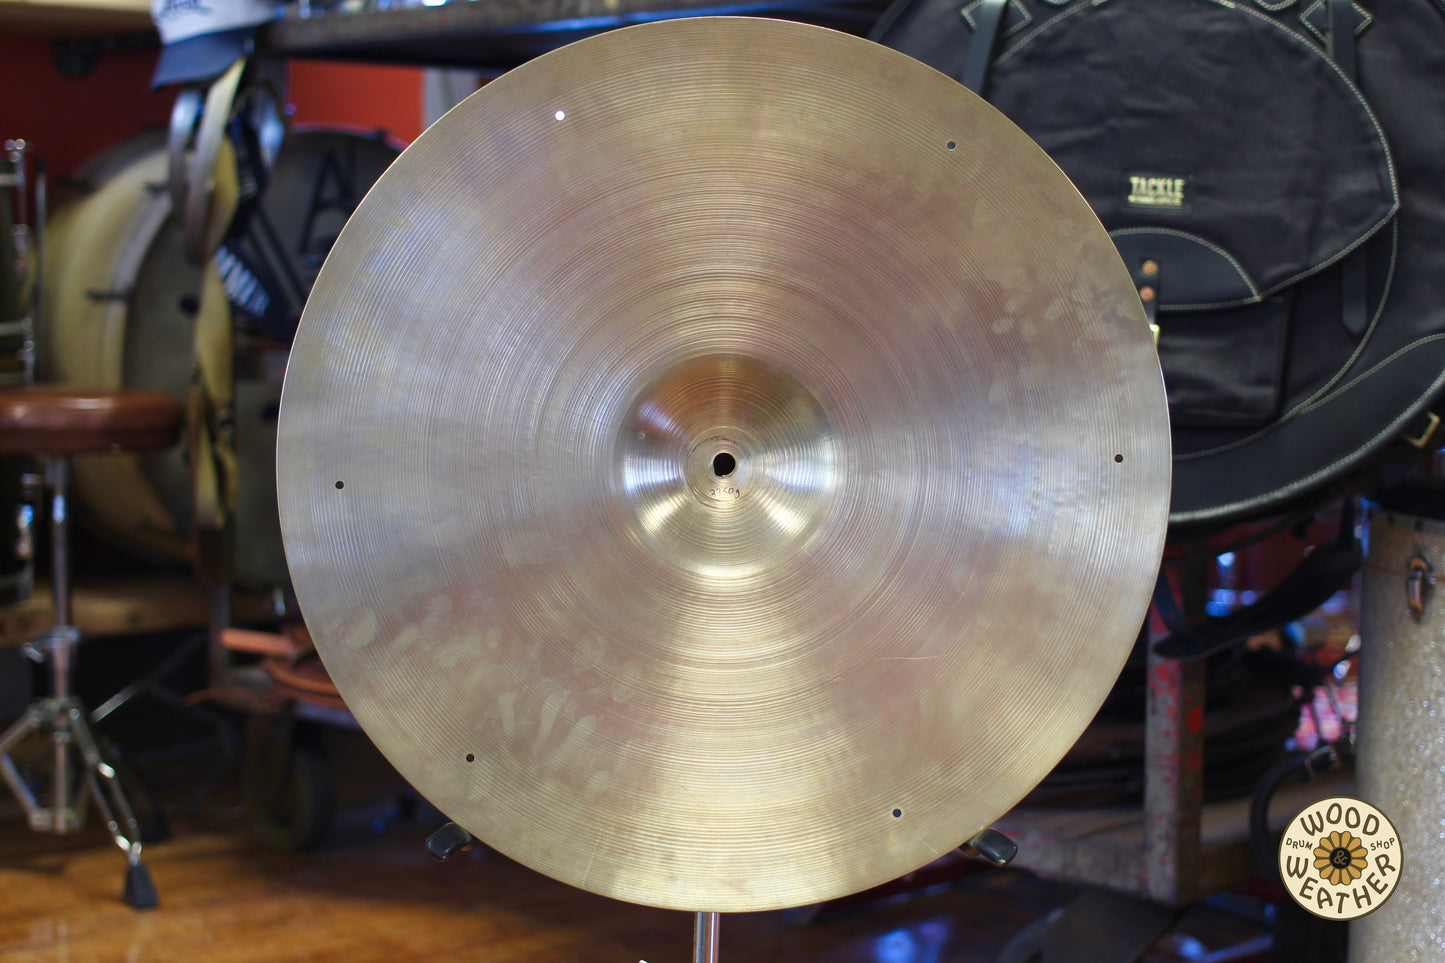 1960s A. Zildjian 20" Ride Cymbal 2350g